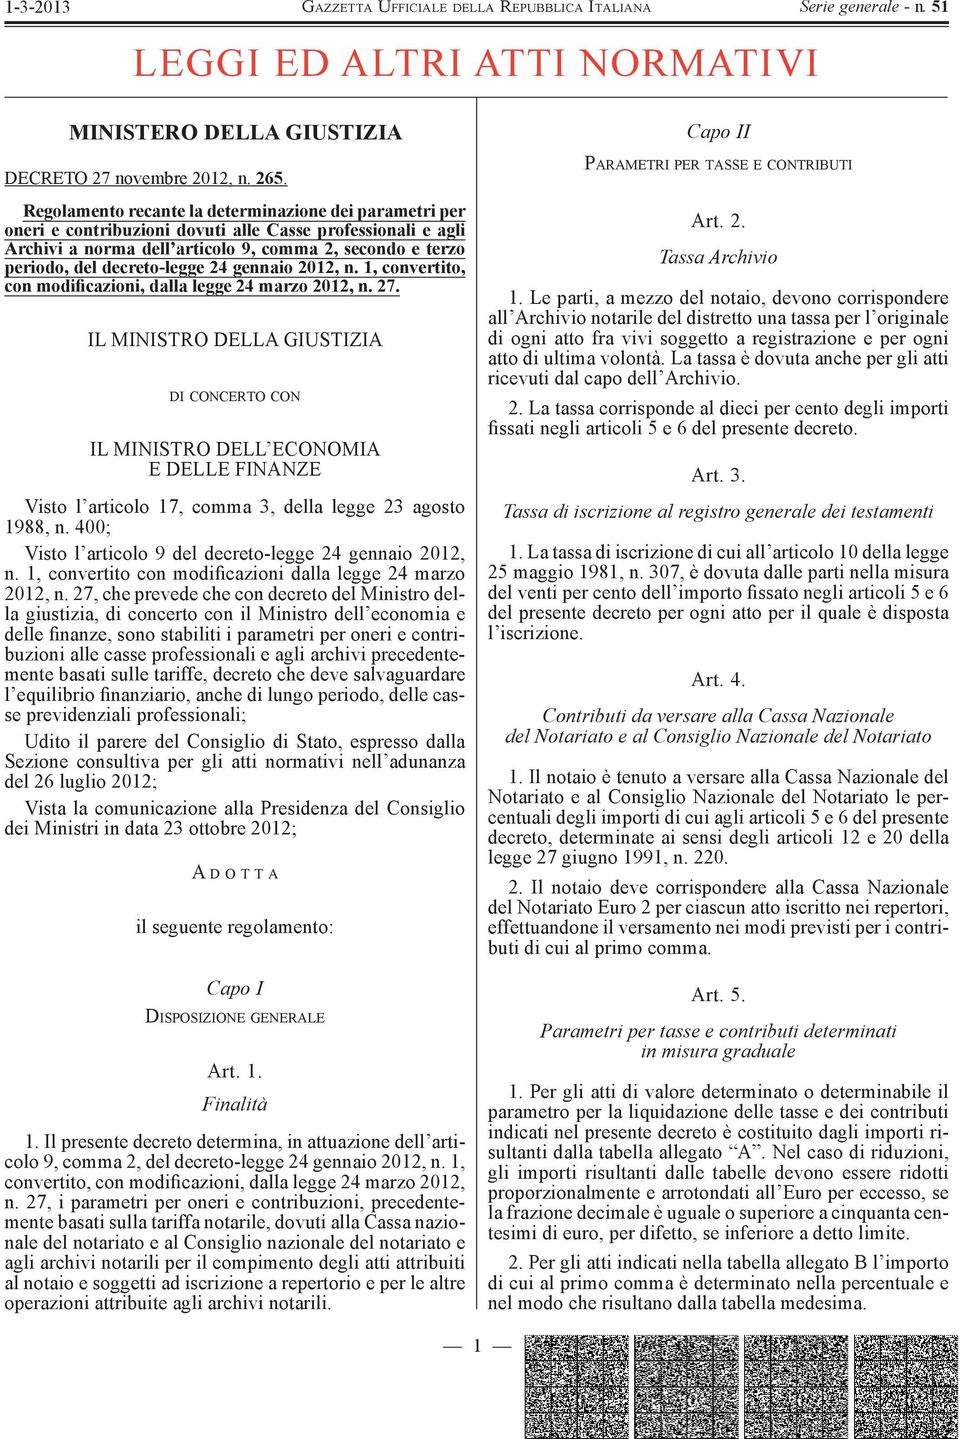 decreto-legge 24 gennaio 2012, n. 1, convertito, con modificazioni, dalla legge 24 marzo 2012, n. 27.